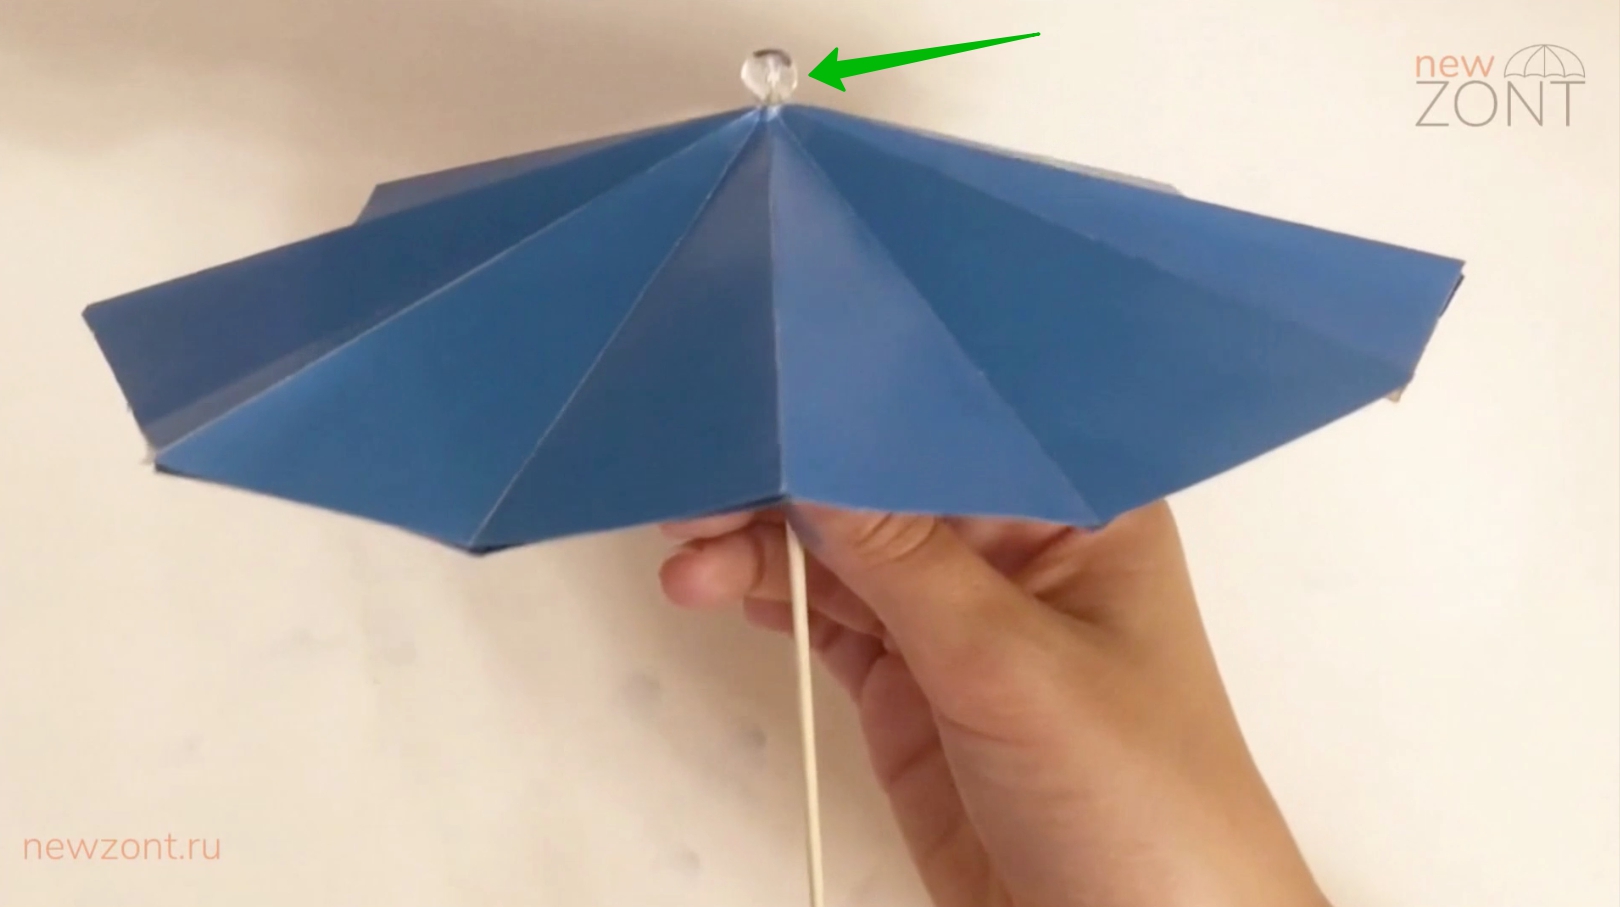 Как работал китайский зонтик?